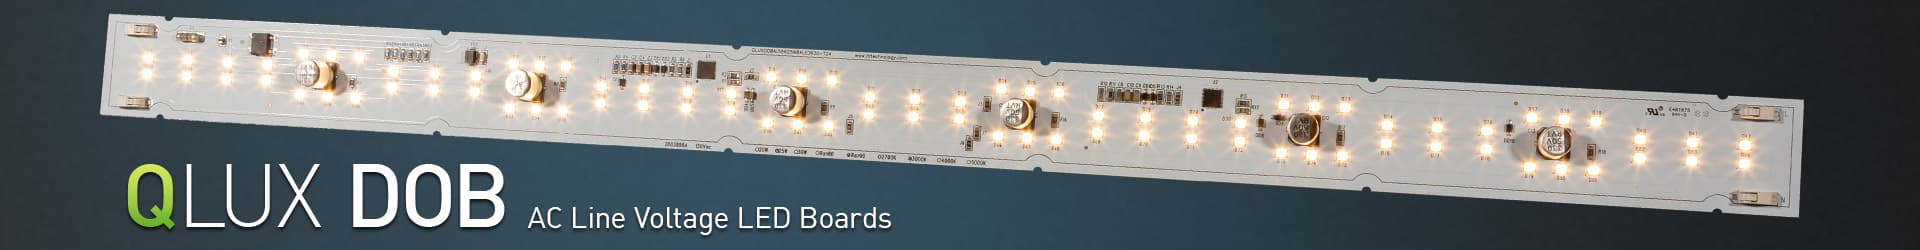 DOBi AC Line Voltage LED Boards